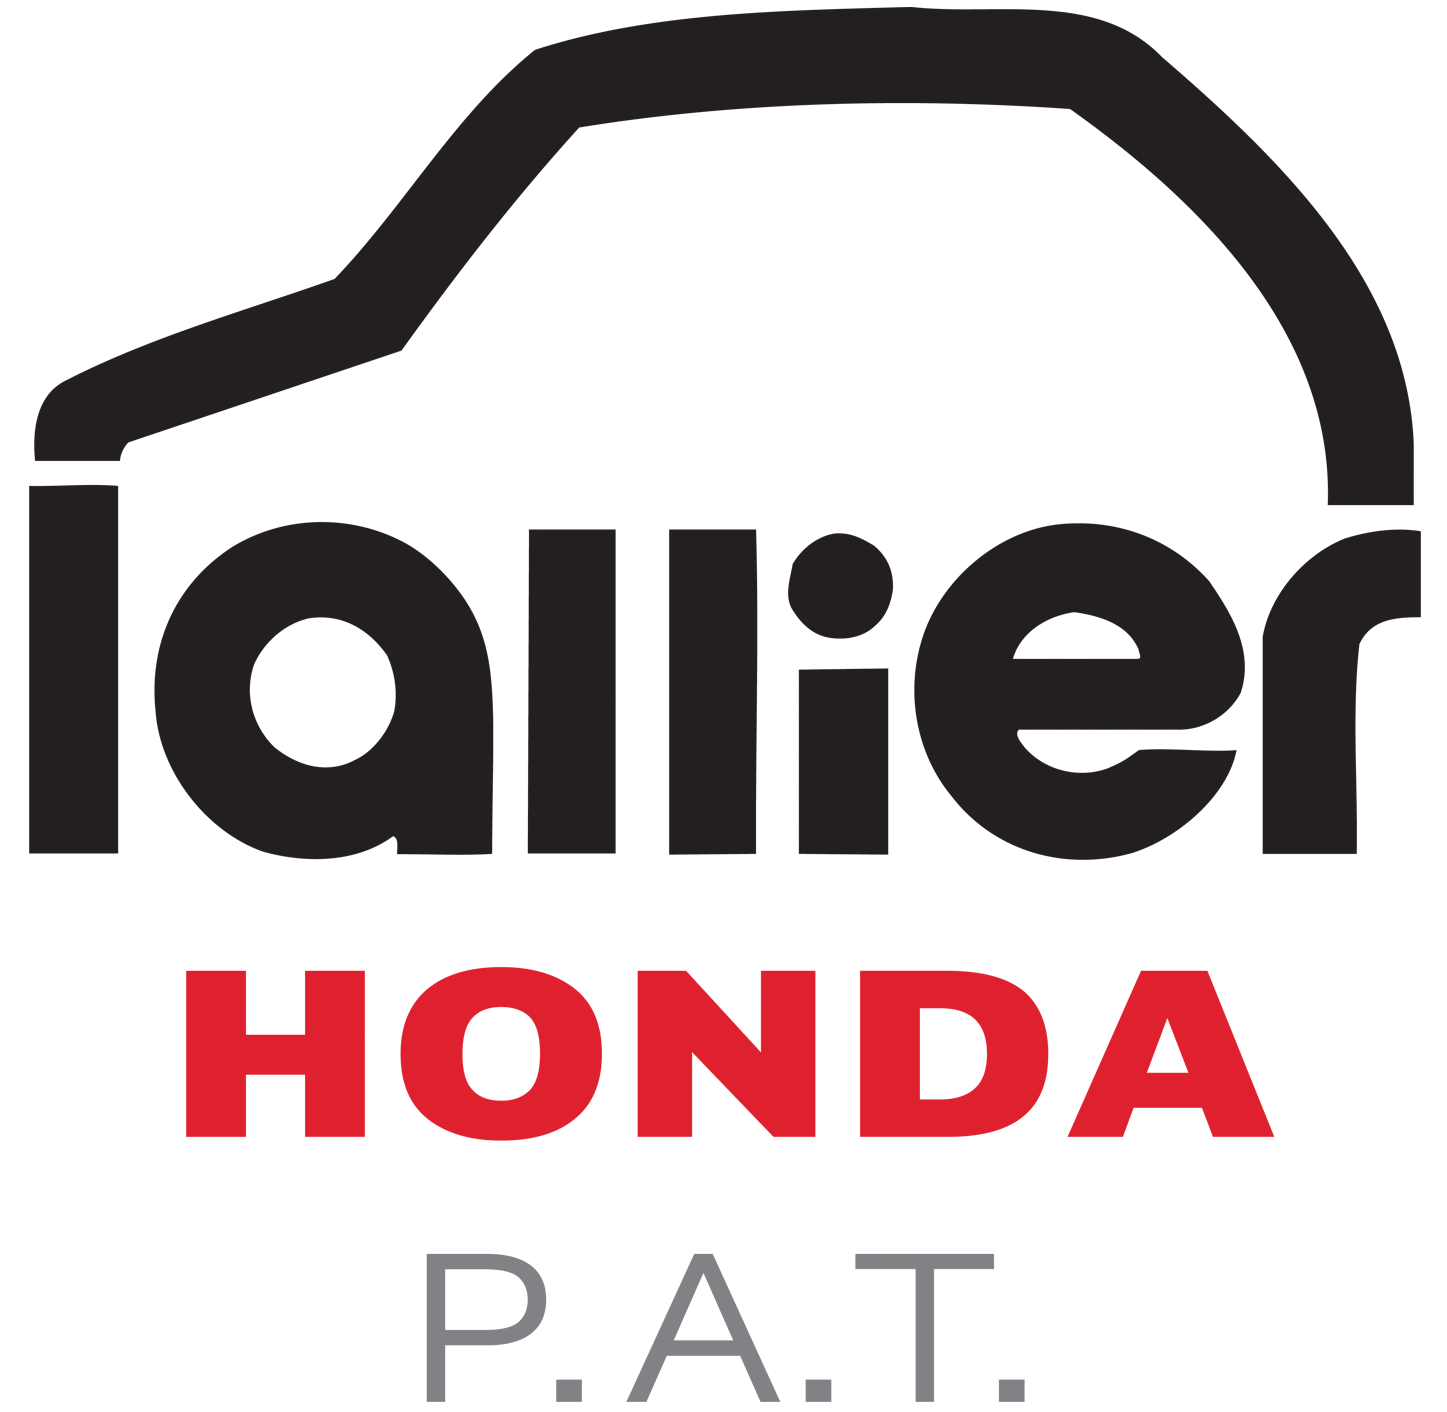 Lallier Honda Pointe Aux Trembles